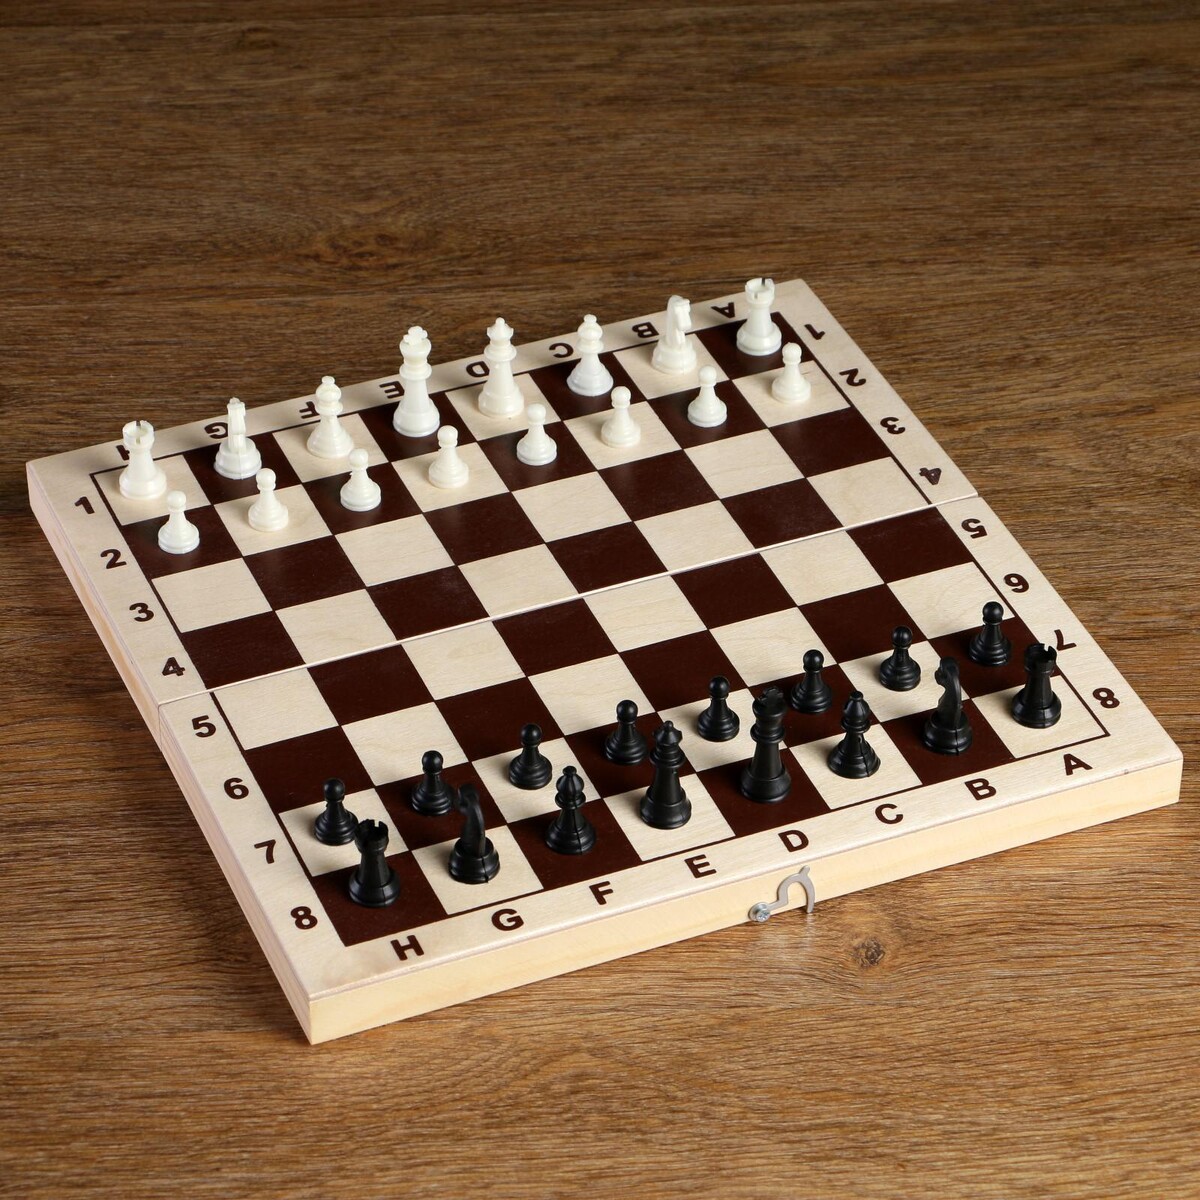 Шахматные фигуры, пластик, король h-4.2 см, пешка h-2 см титановый король